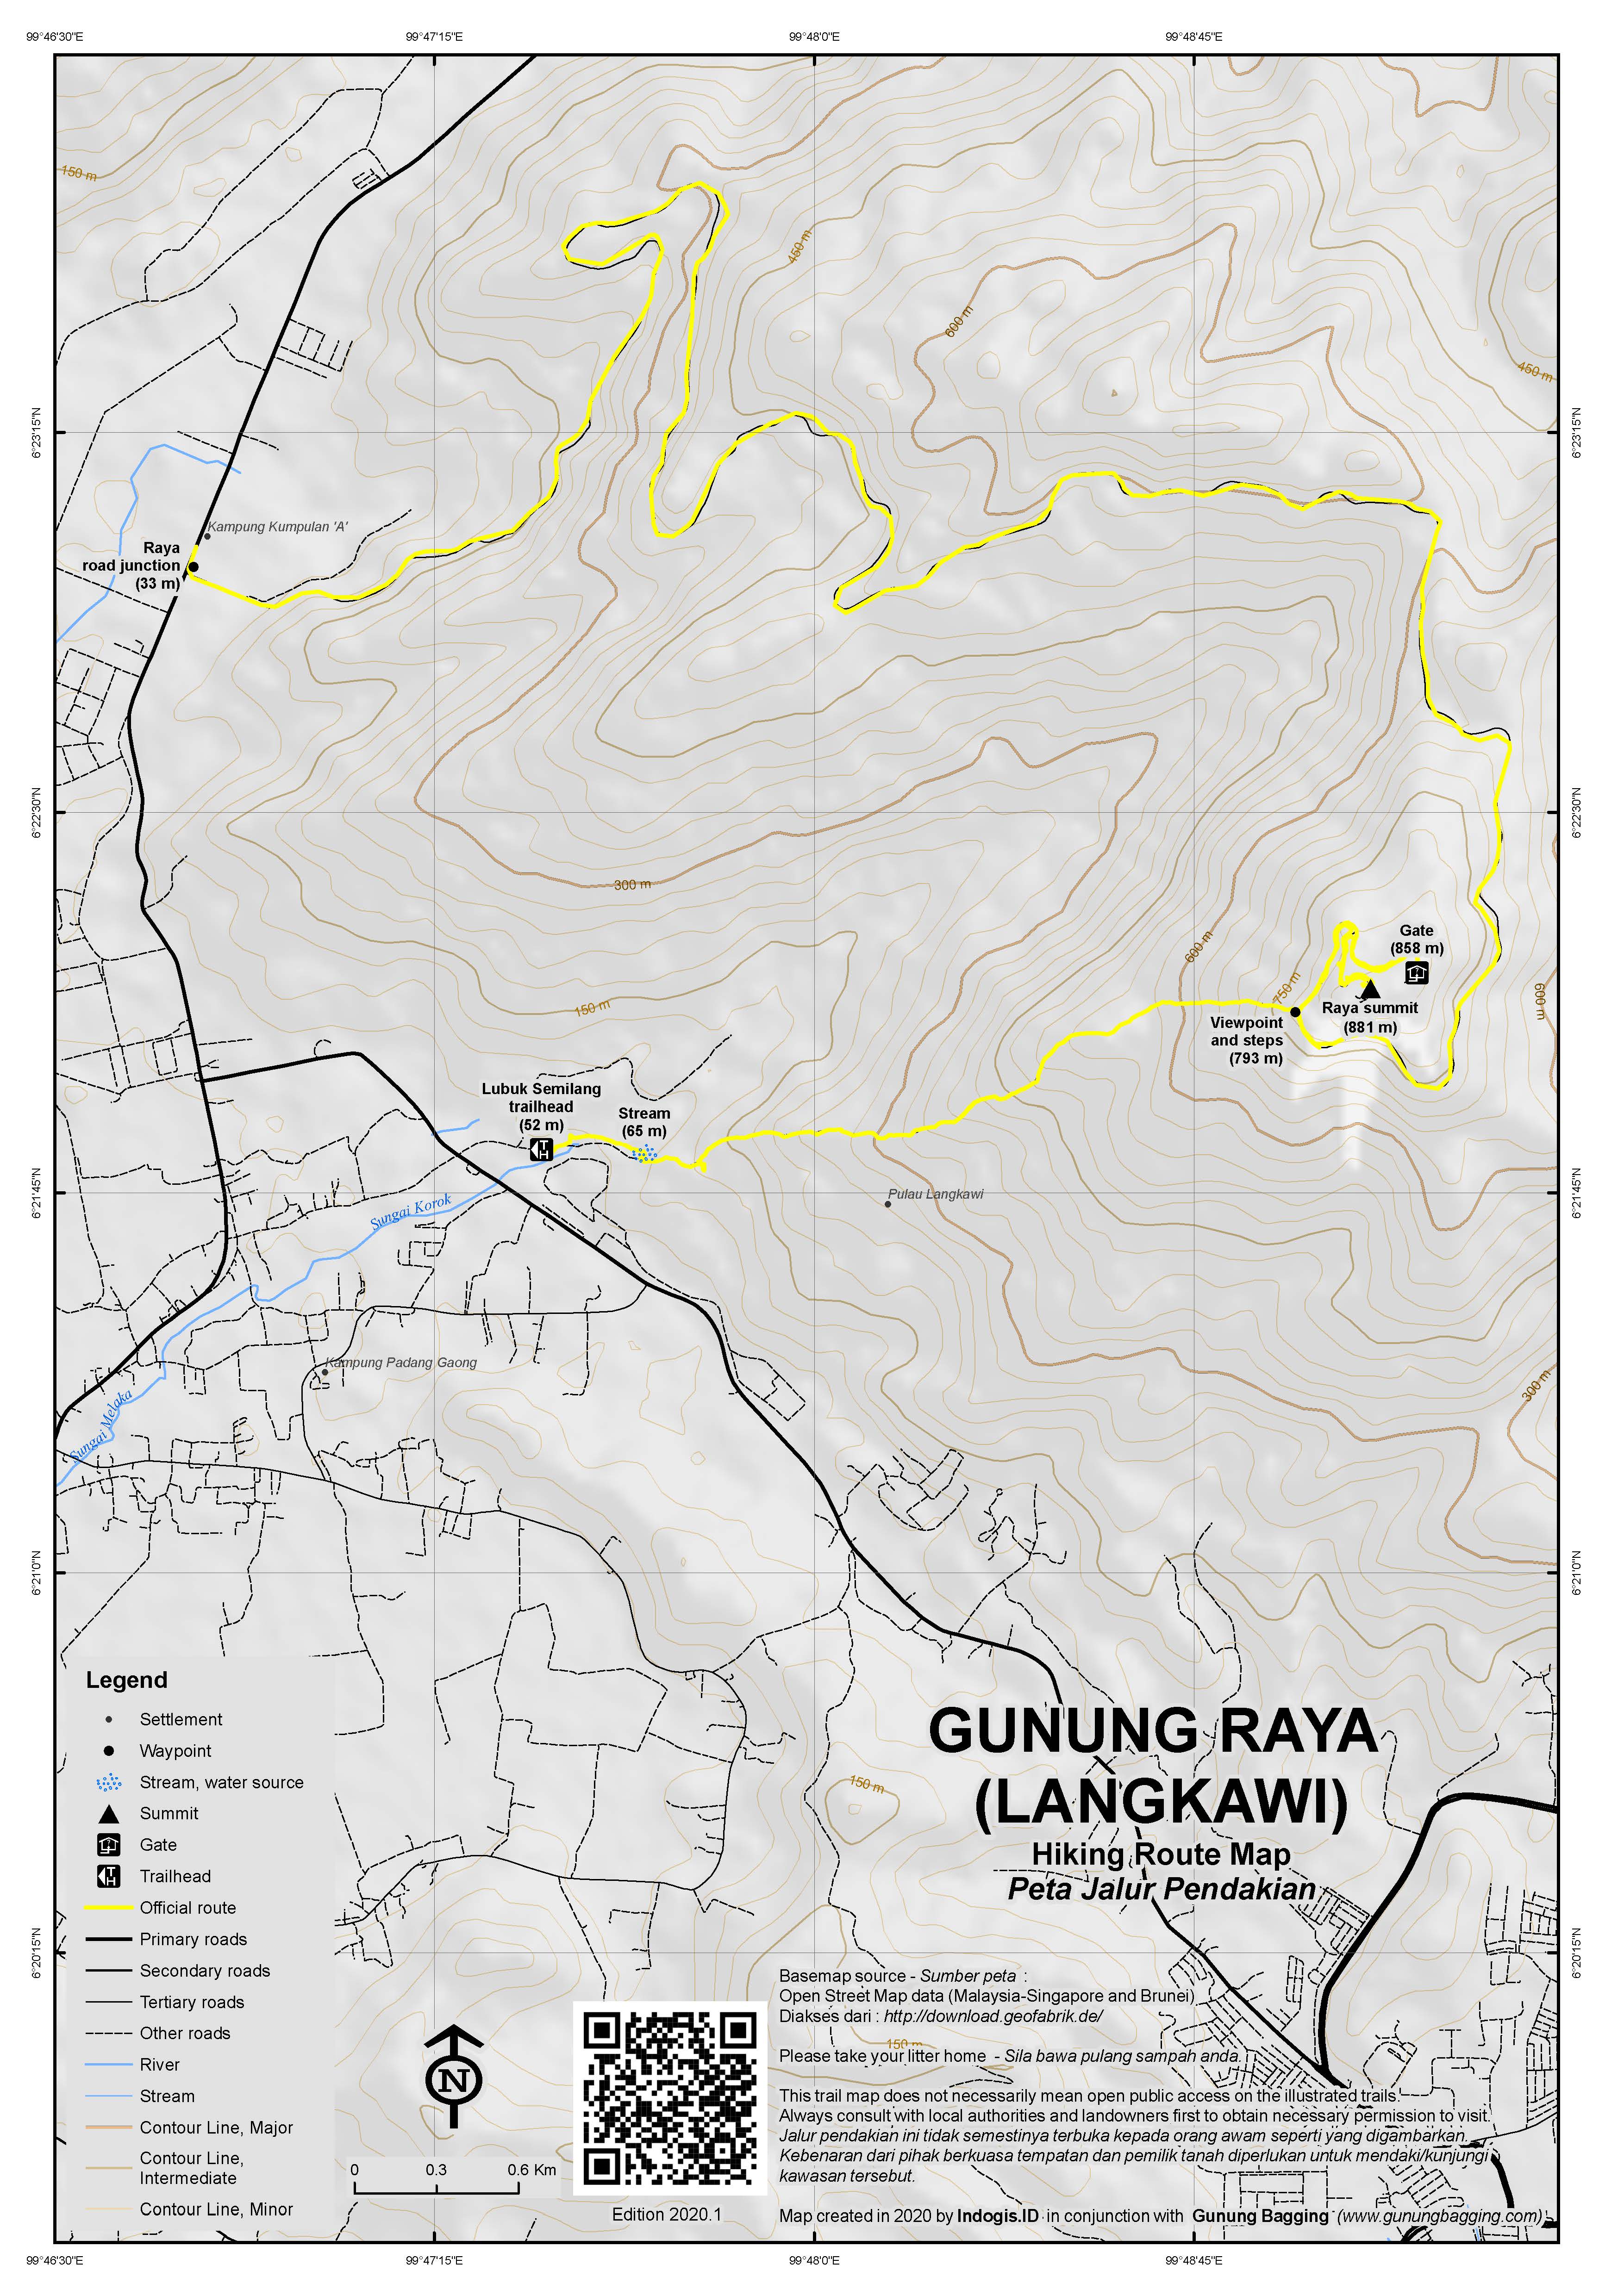 Peta Jalur Pendakian Gunung Raya (Langkawi)